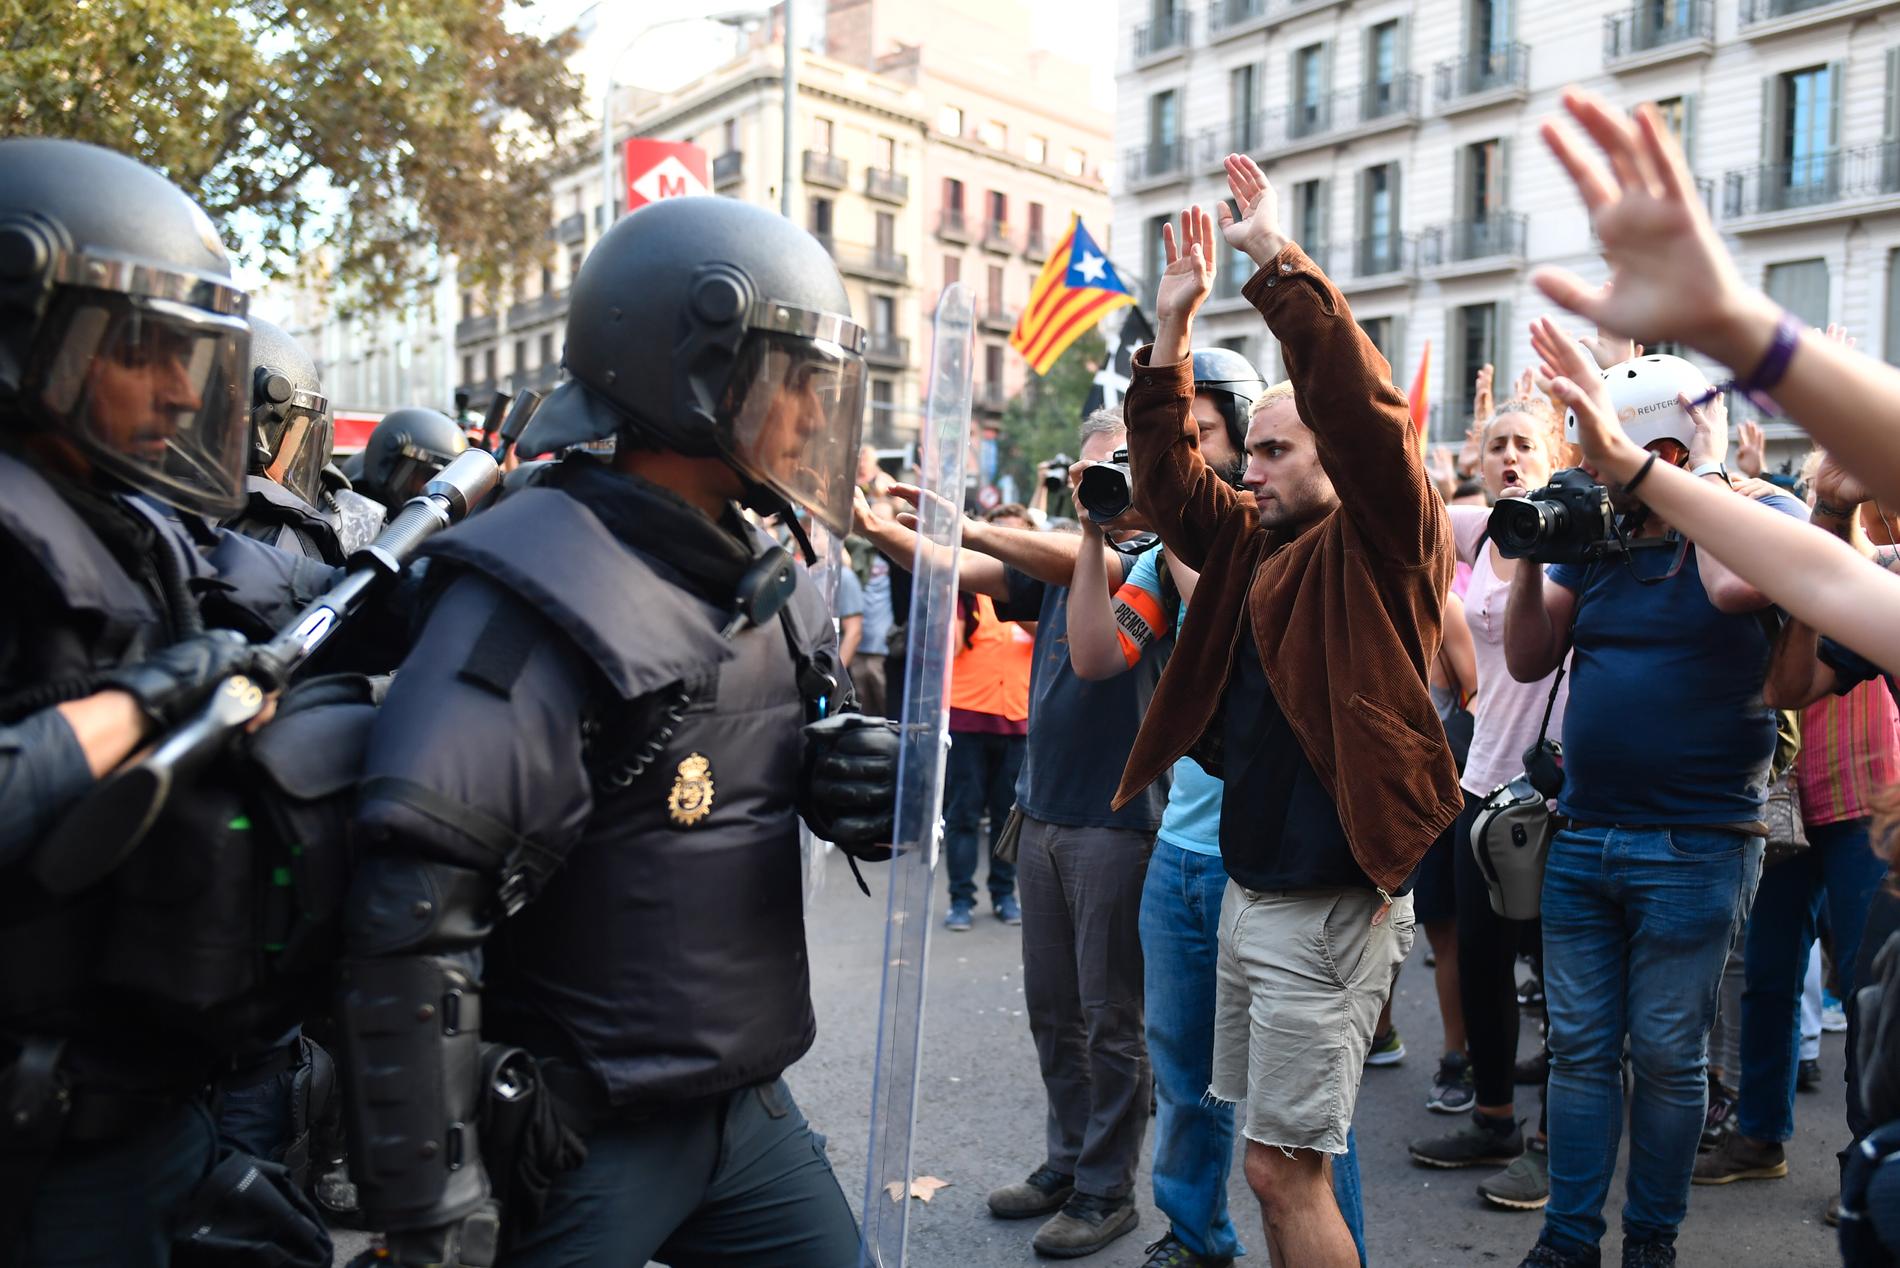 Vox vill förutom att förbjuda samtliga spanska separatiströrelser.